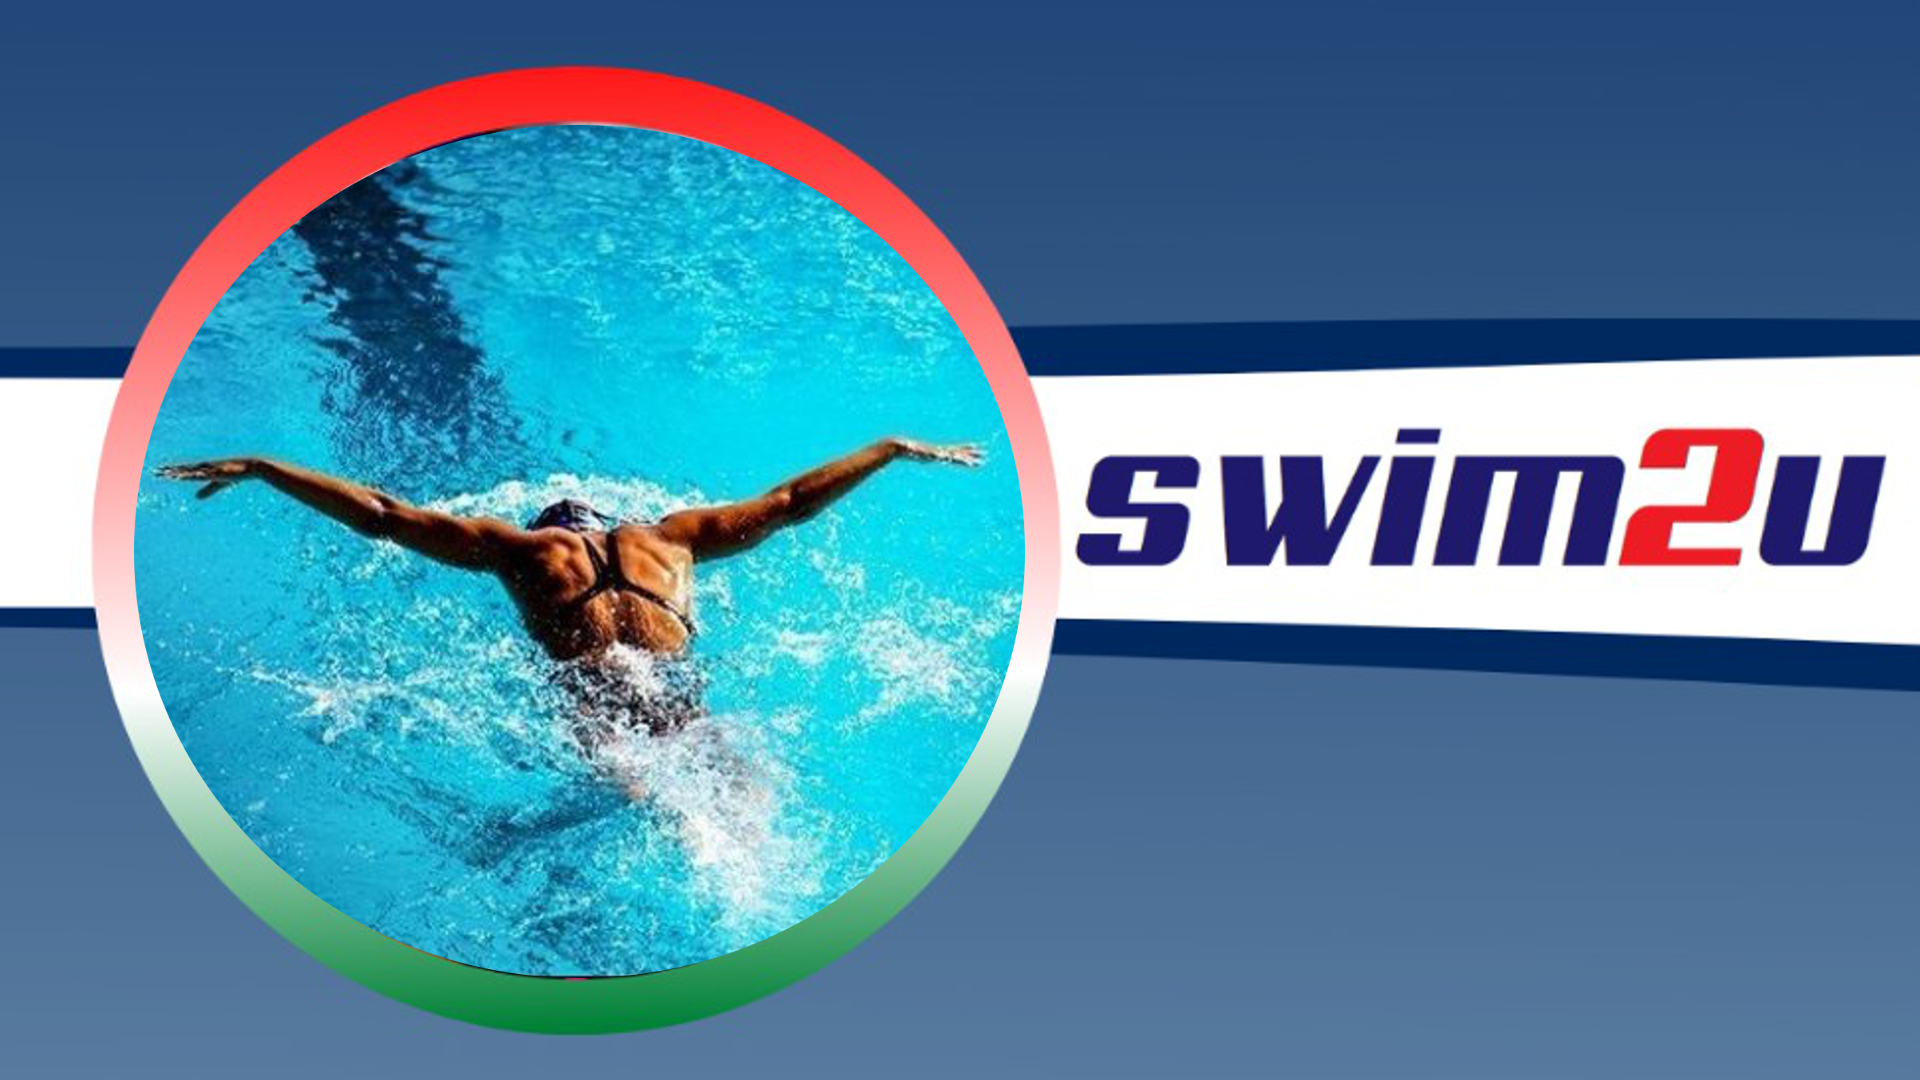 Swim2u Speciale Federica Pellegrini